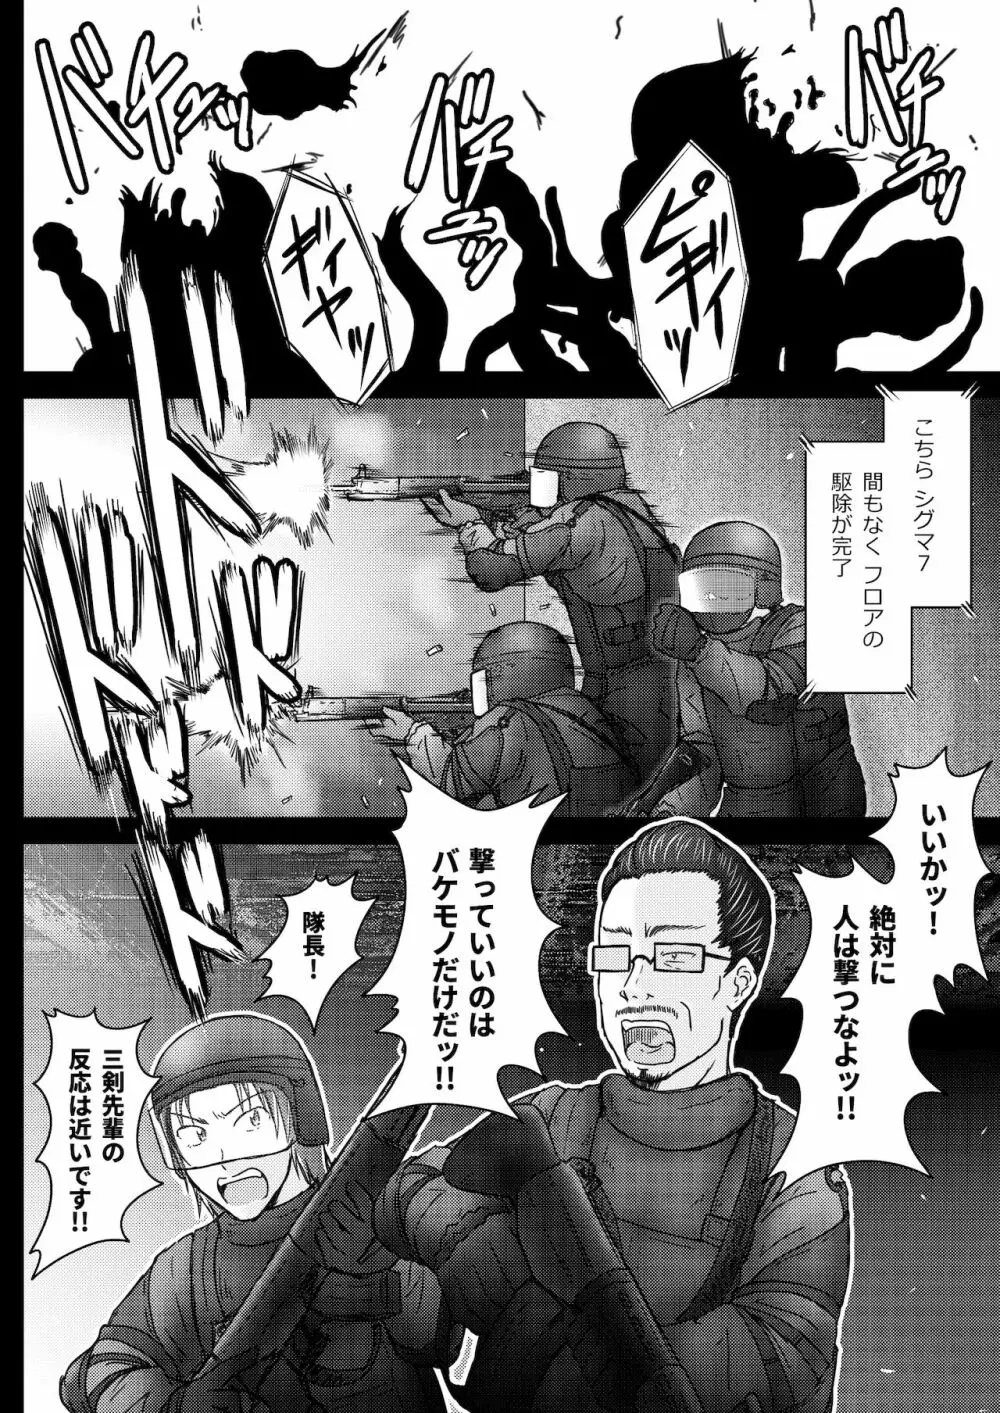 環境治安局捜査官・三剣鏡 #01 DEVIL MAY CARE 37ページ